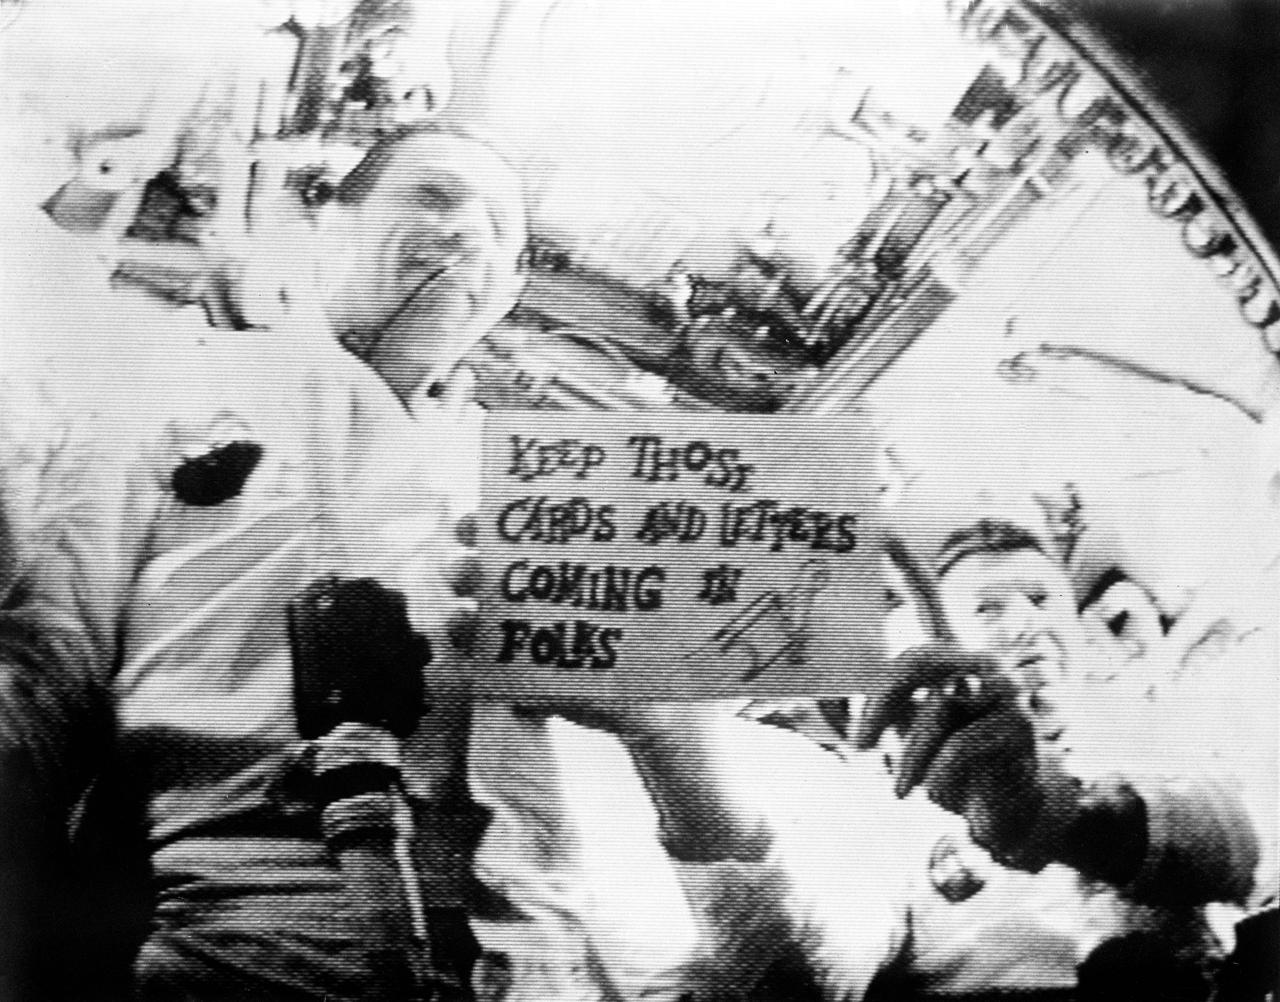 Apollo 7 mission photo